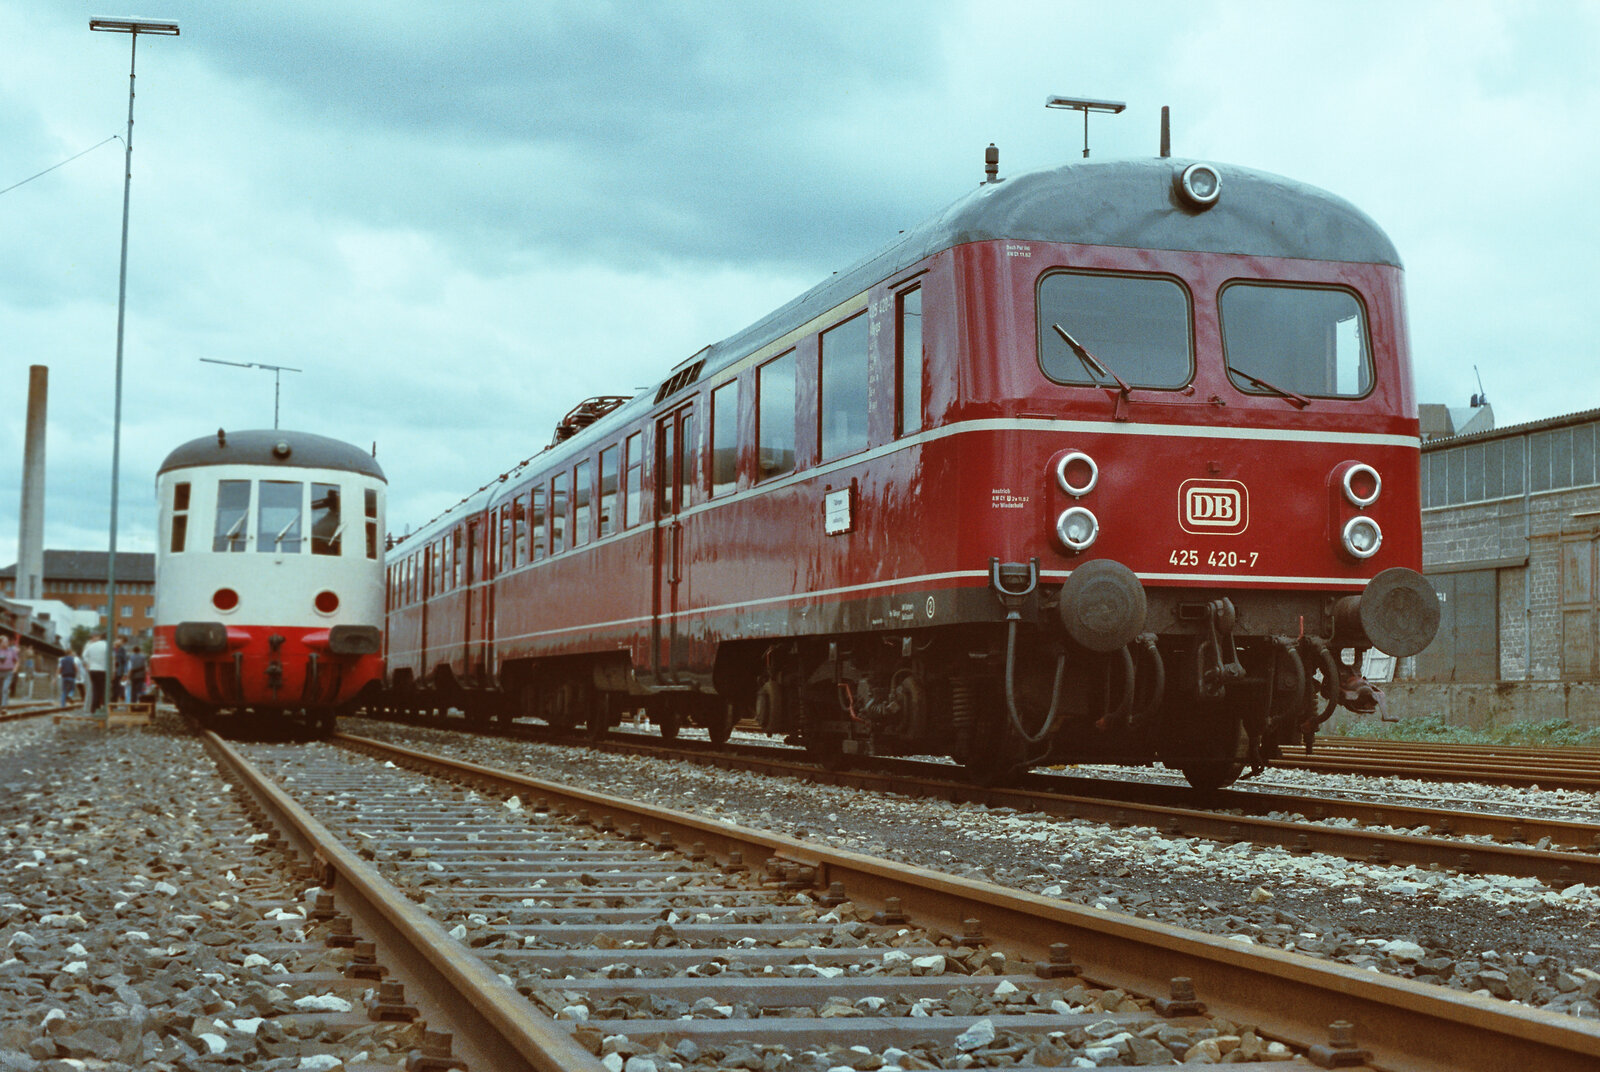 ET 11 01 (DR) und rechts daneben ein Stuttgarter Vorortzug der DB-Baureihe 425 auf einer Feier des BDEF neben dem Stuttgarter Hauptbahnhof.
Datum: 31.05.1984